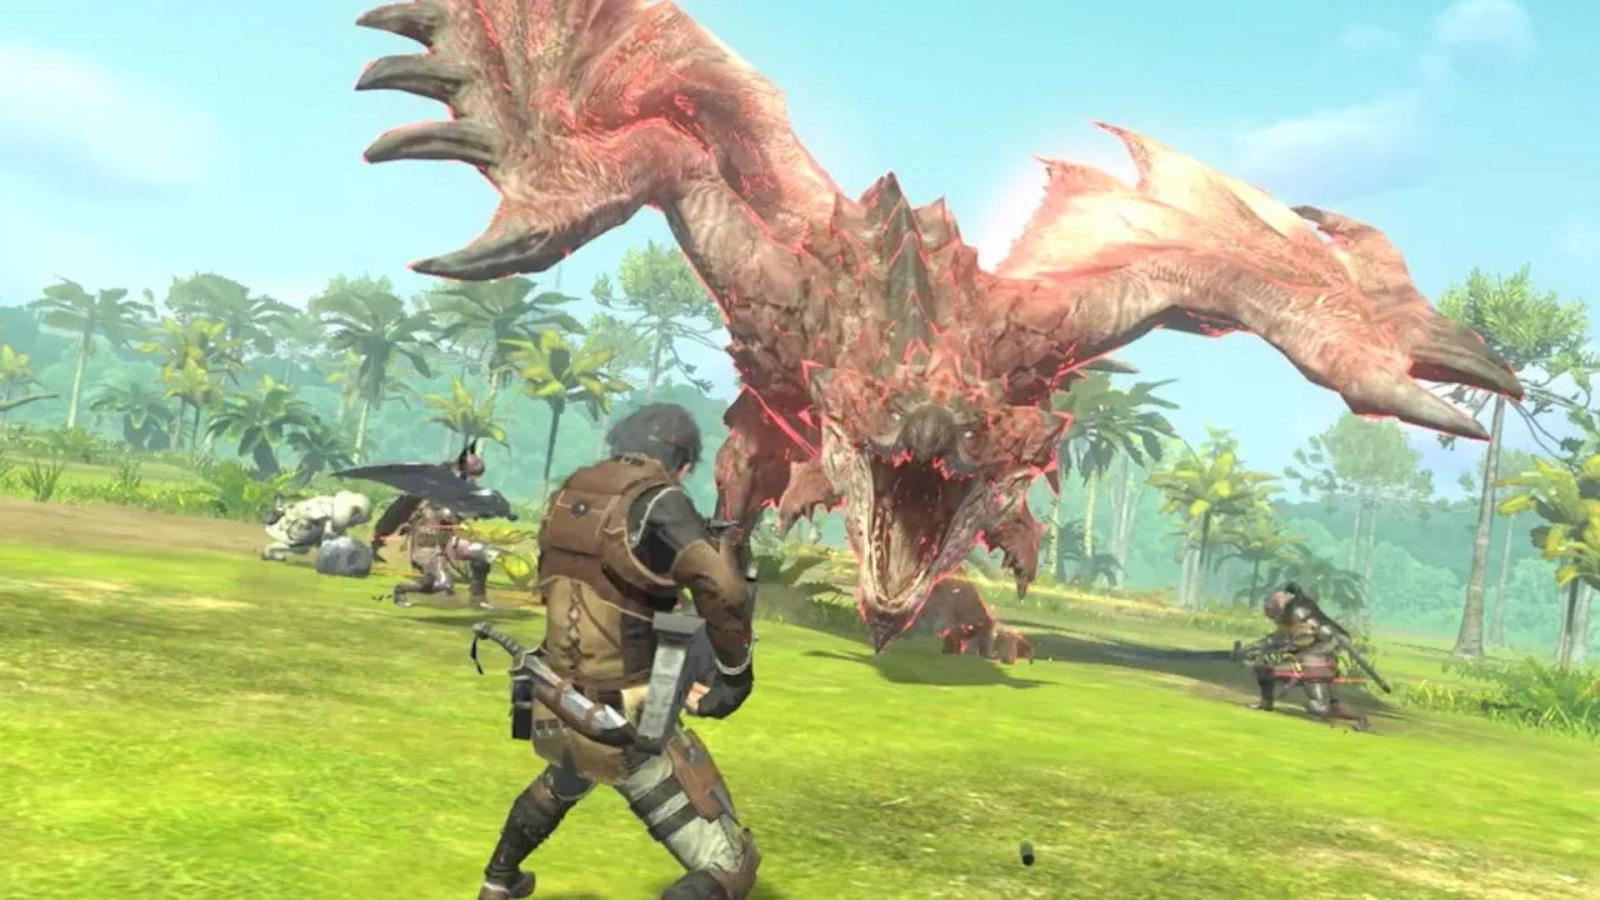 New Monster Hunter Rise Demo Announced Alongside New Gameplay